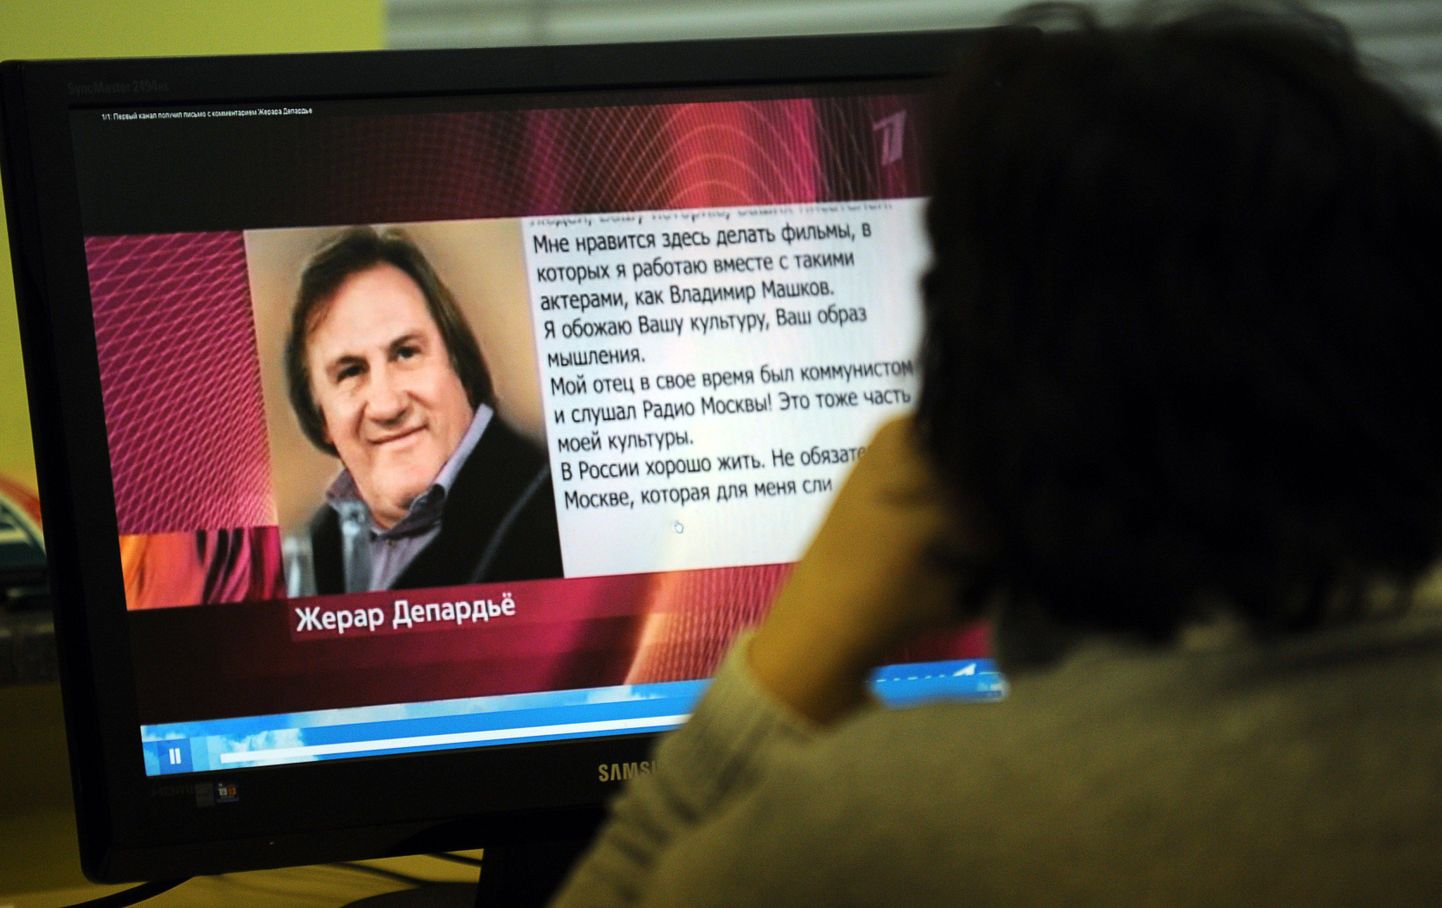 Naine vaatab Vene telekanali Pervõi Kanal internetisaiti, millel on näha Gérard Depardieu avalik kiri venelastele.